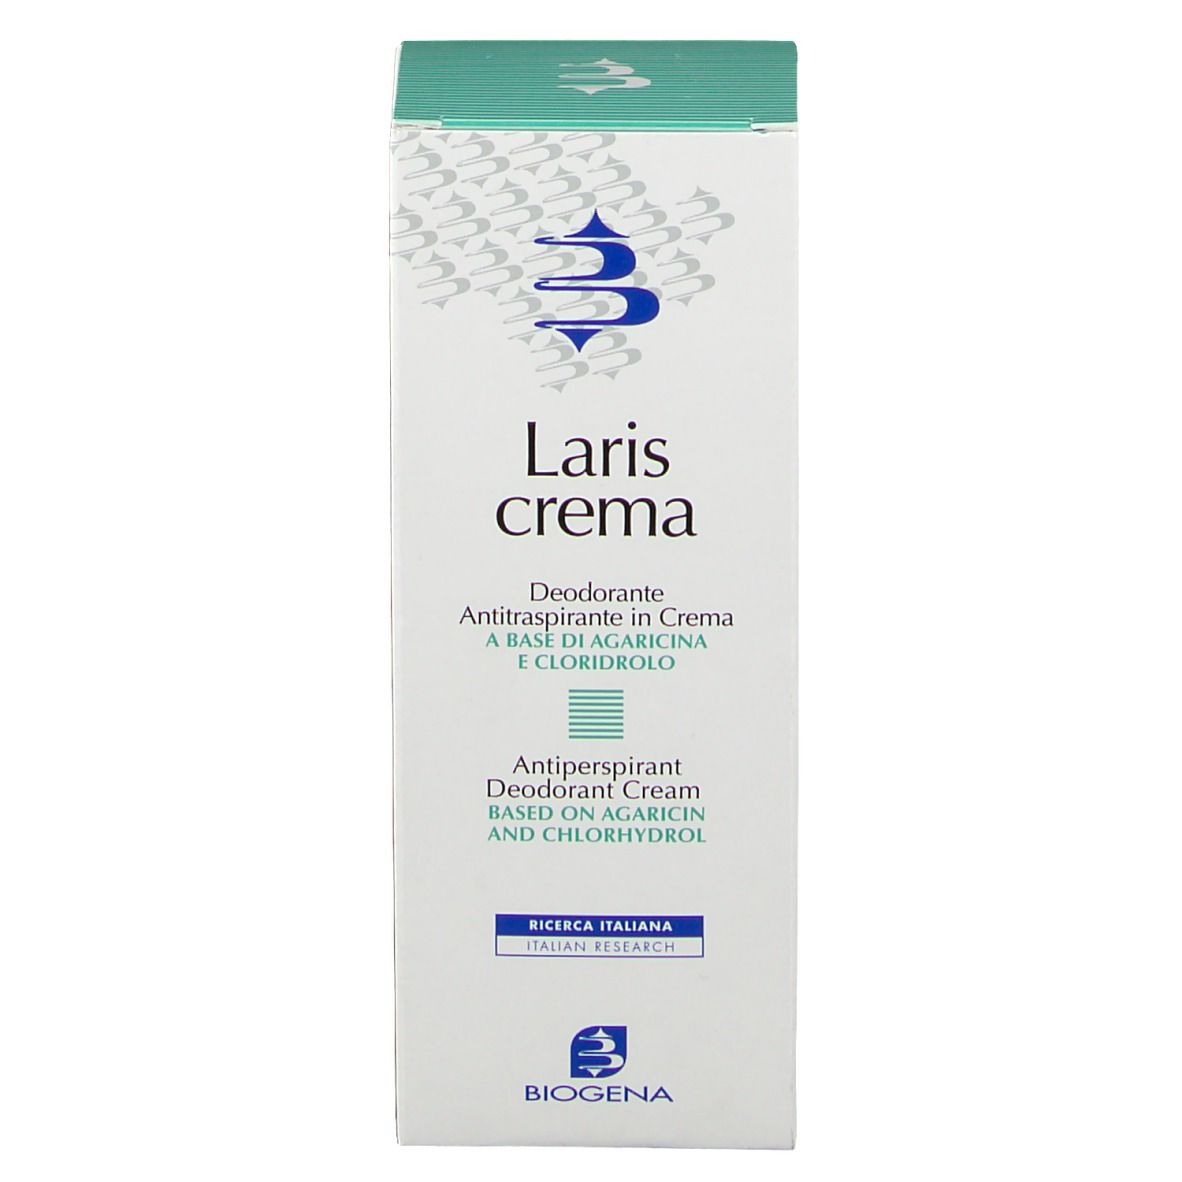 Laris Crema Deodorante Antitraspirante in Crema